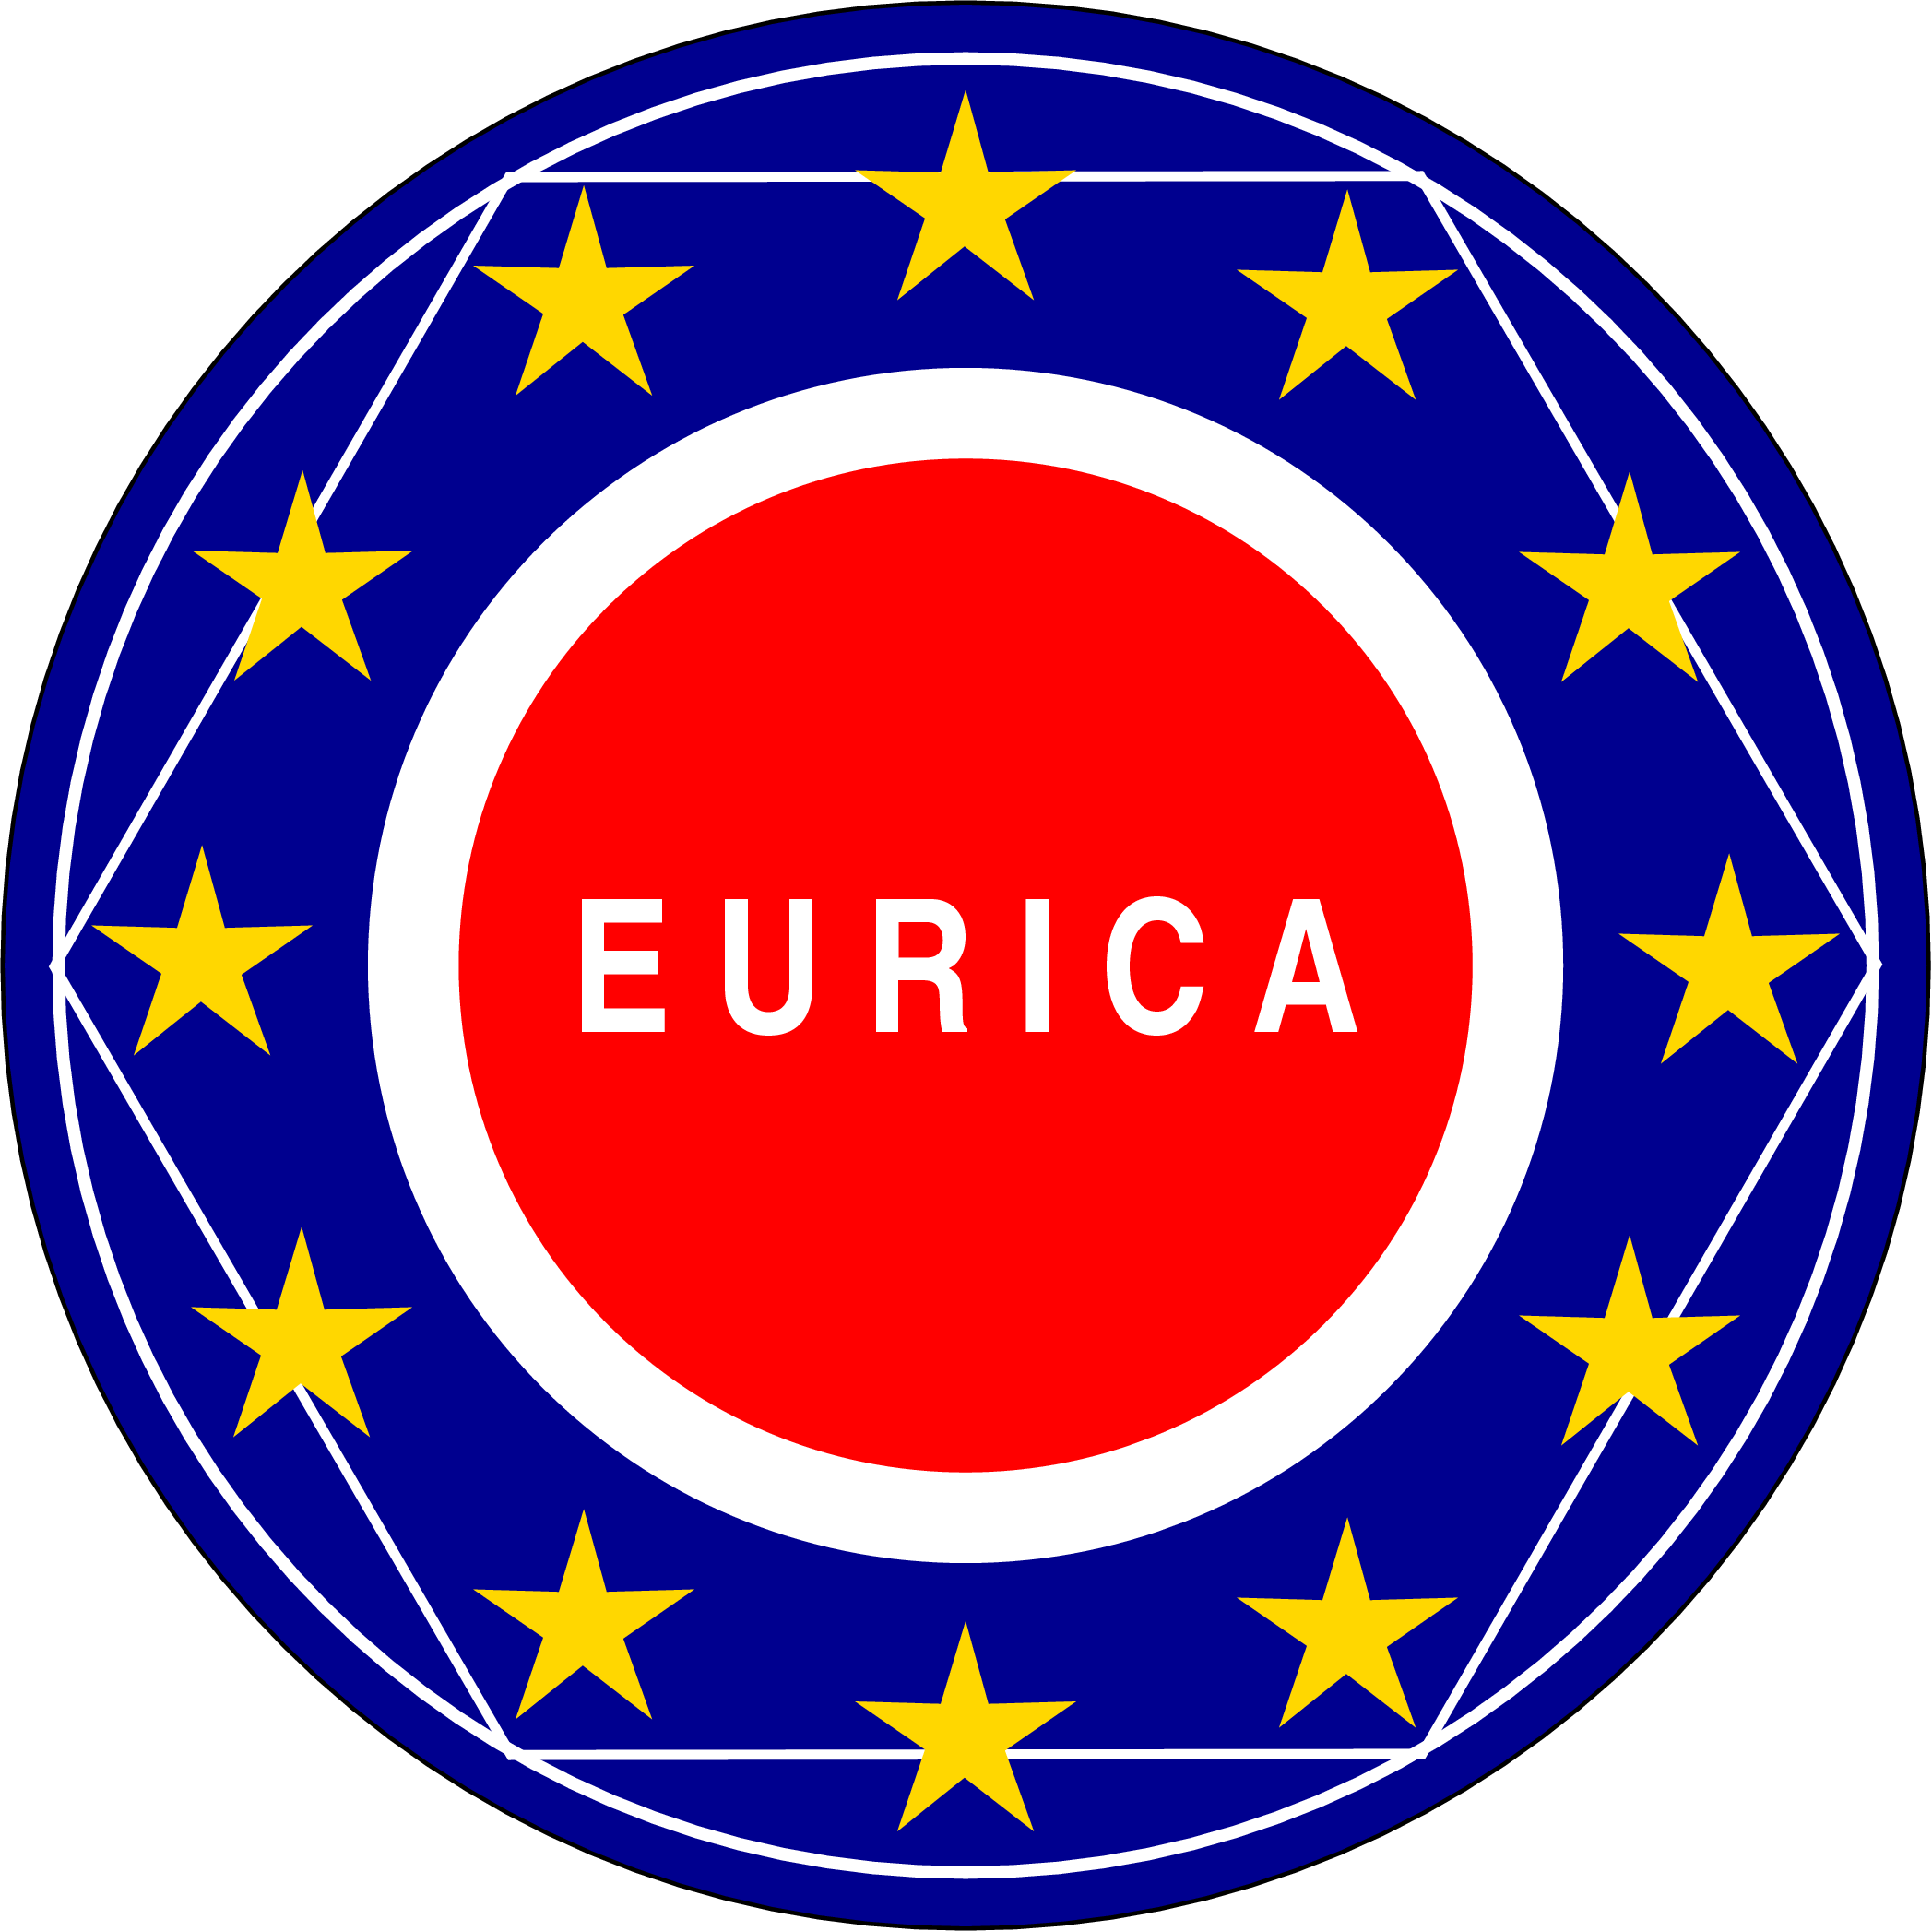 eurica_logo_xfig.png